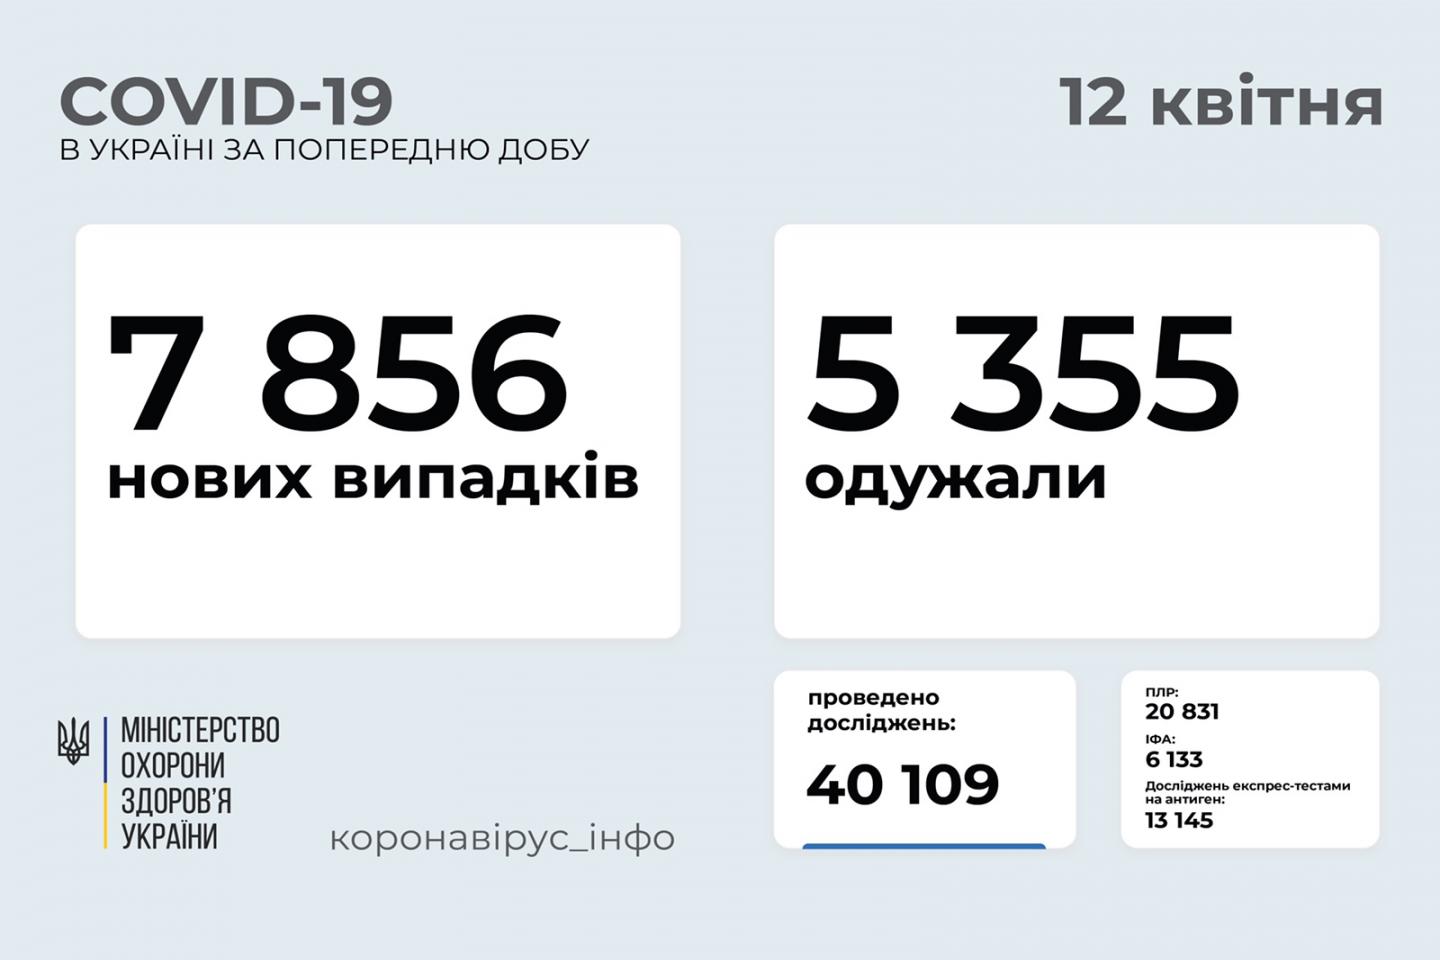 http://dunrada.gov.ua/uploadfile/archive_news/2021/04/12/2021-04-12_7383/images/images-57113.jpg